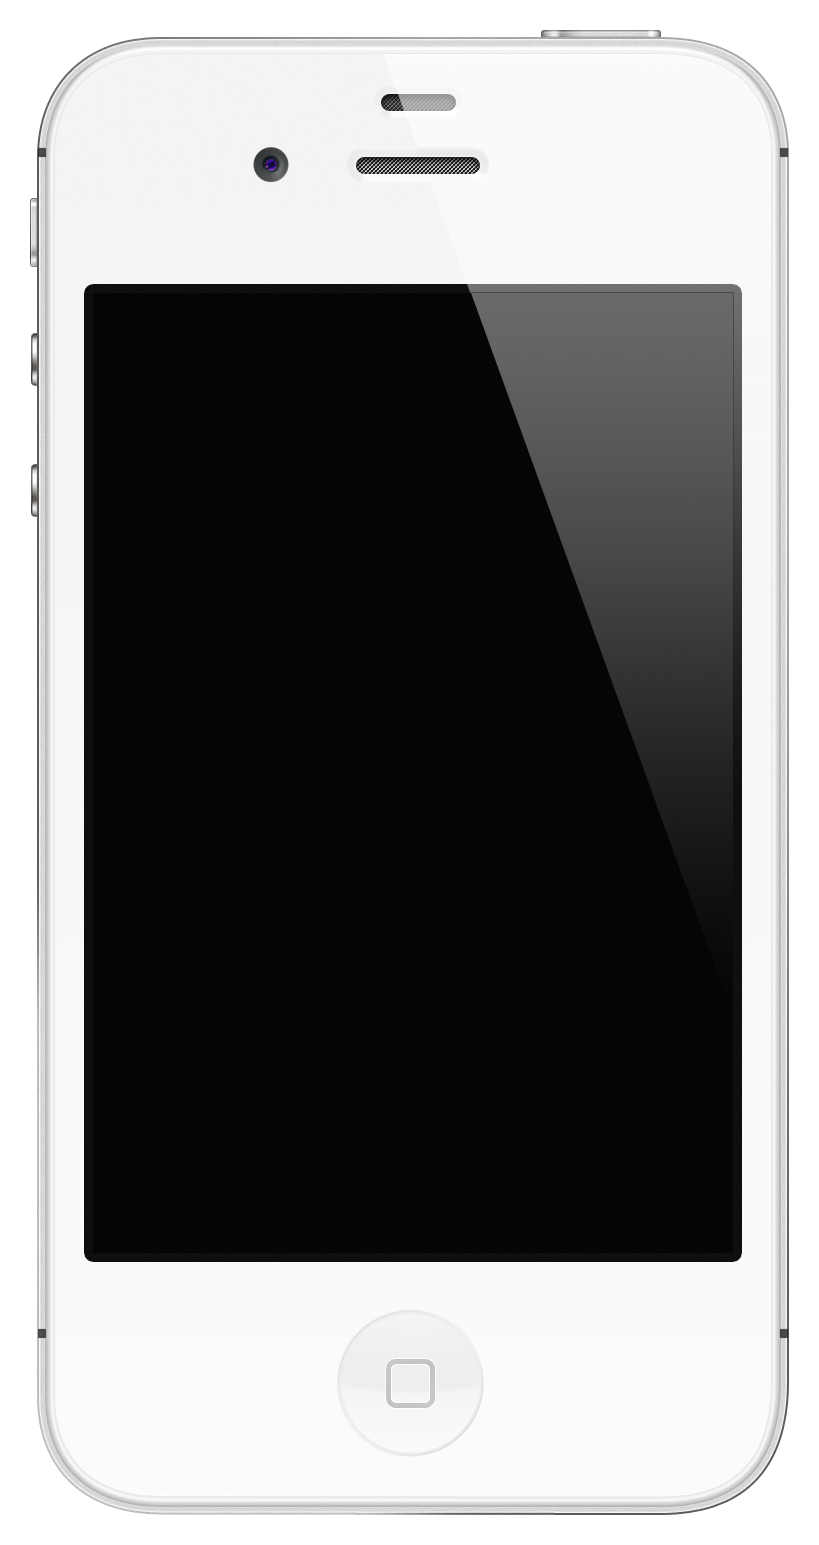 Iphone 4s 9.3 5 jailbreak nasıl yapılır